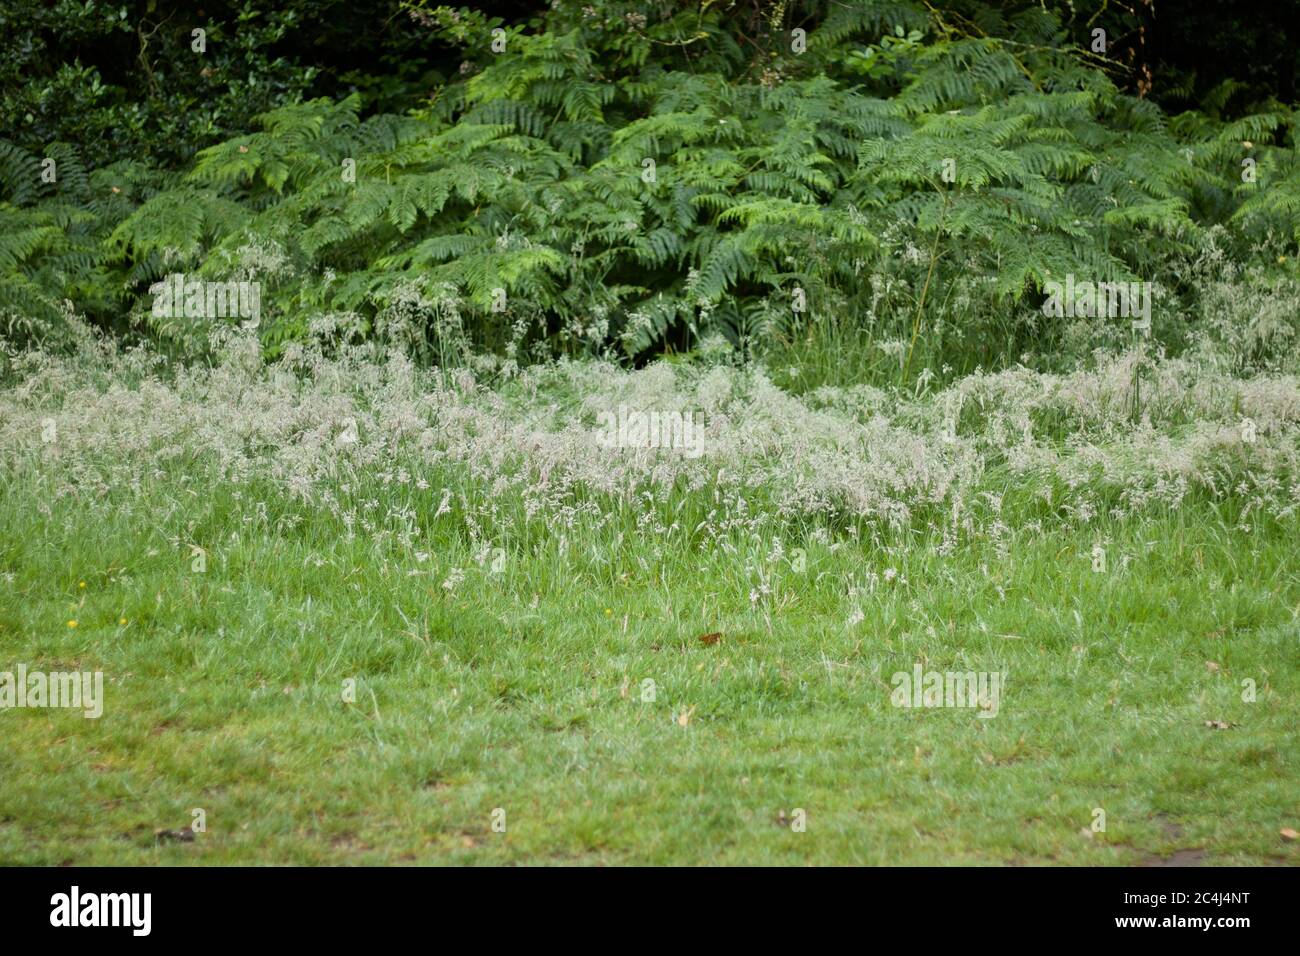 Escena rural inglesa mostrando helechos y malezas con espacio de copia en primer plano Foto de stock